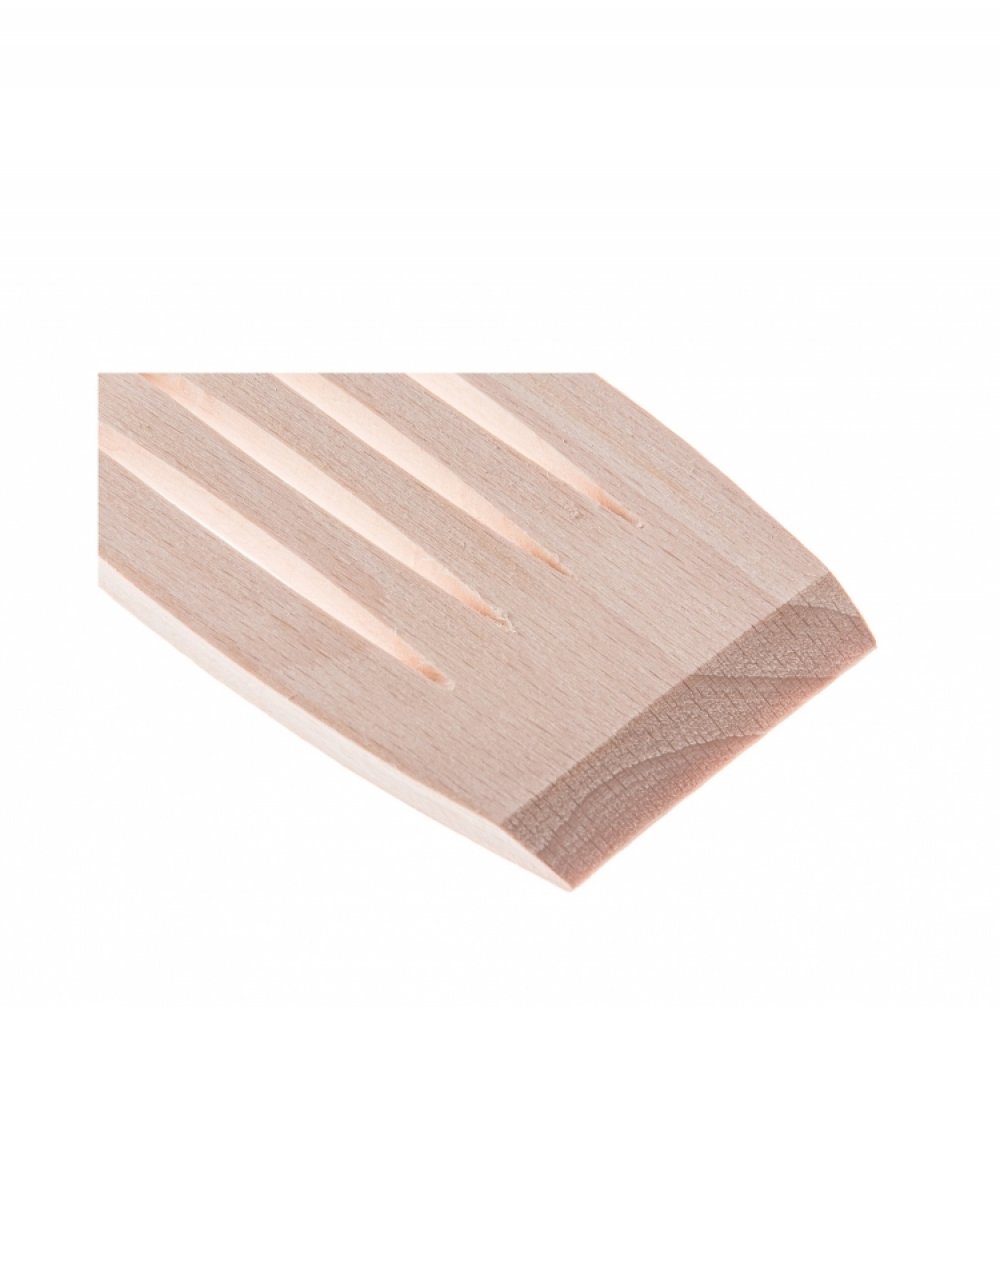 Dřevěná kuchyňská obracečka s otvory 30x5,5 cm